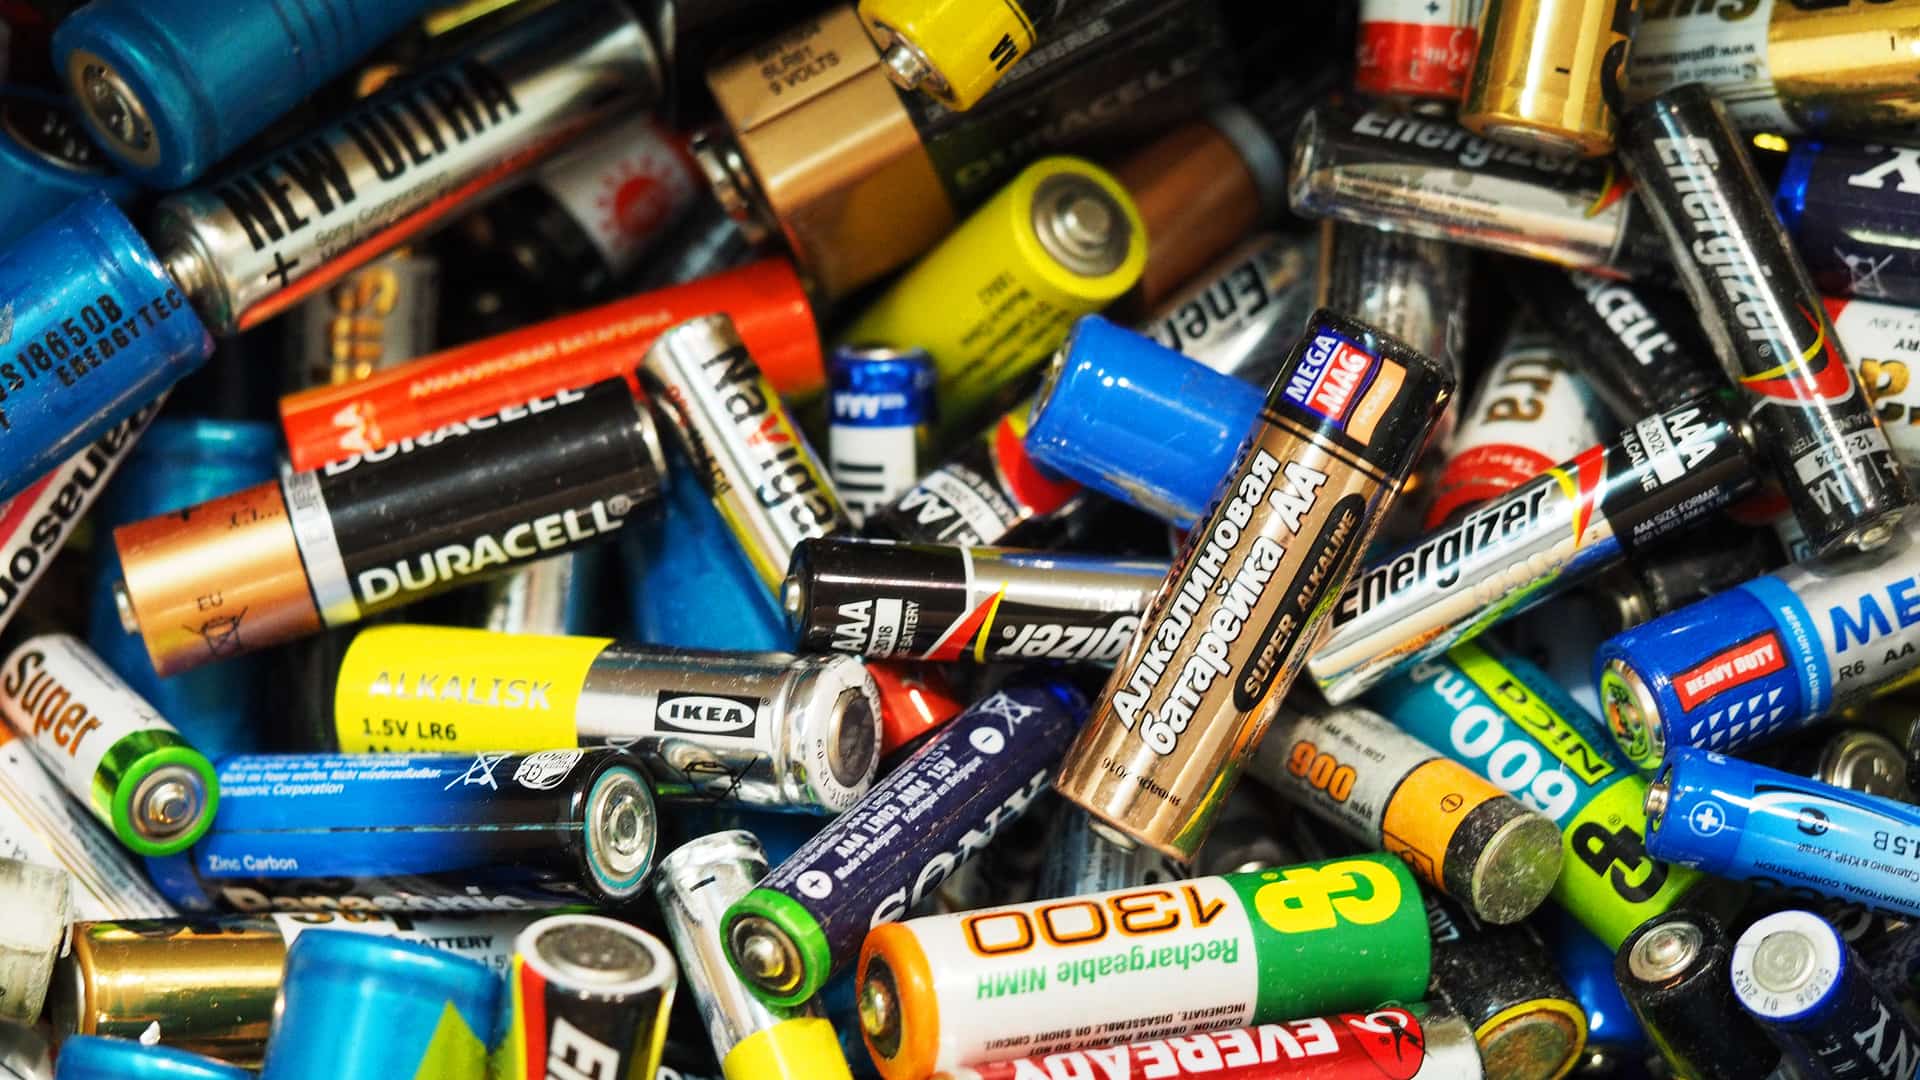 Cambiar batería Securitas Direct: ¿cómo hacerlo?